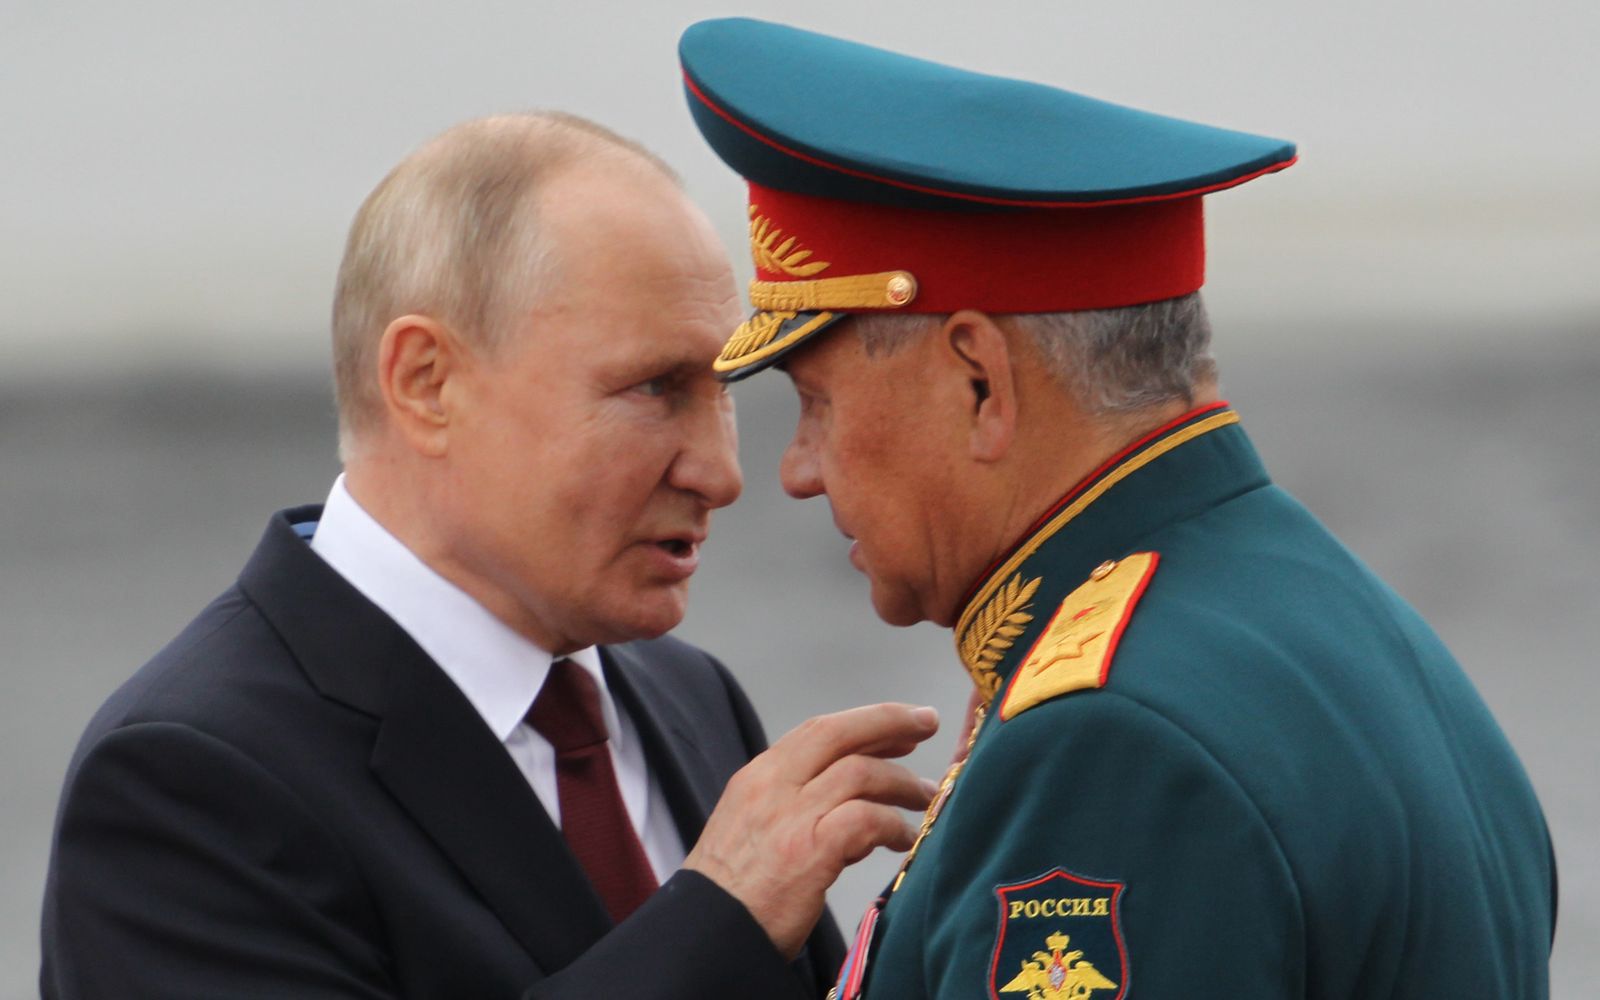 Ludzie Putina winni zbrodni w Ukrainie. Generał: "J...ć, karać, nie wyróżniać"